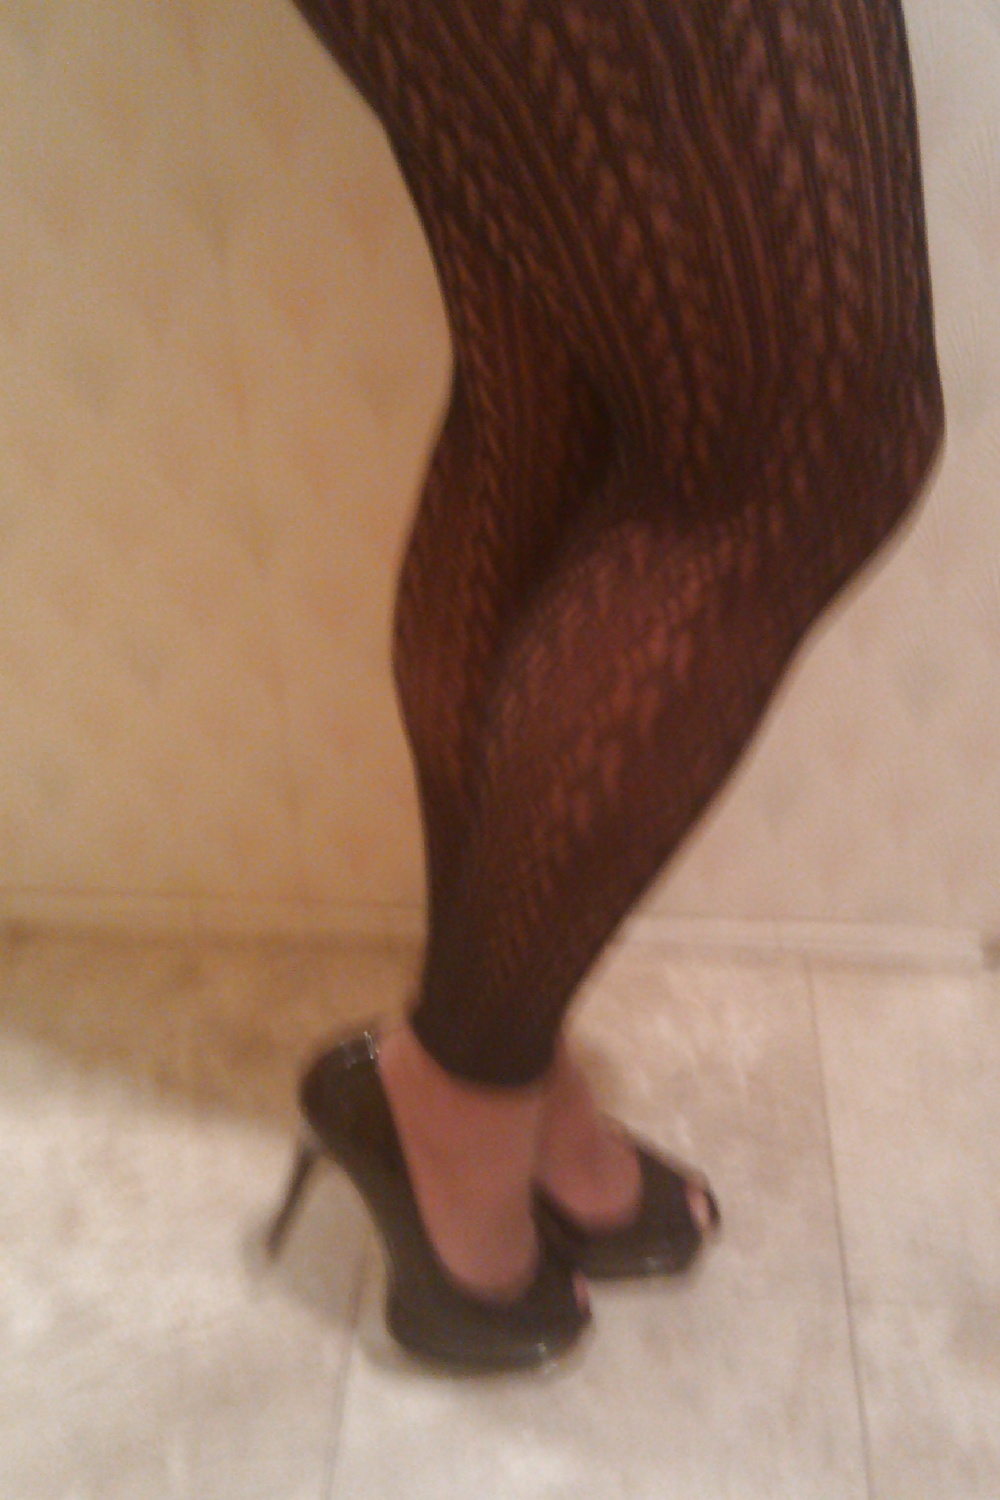 My legs feet and ass #3527568